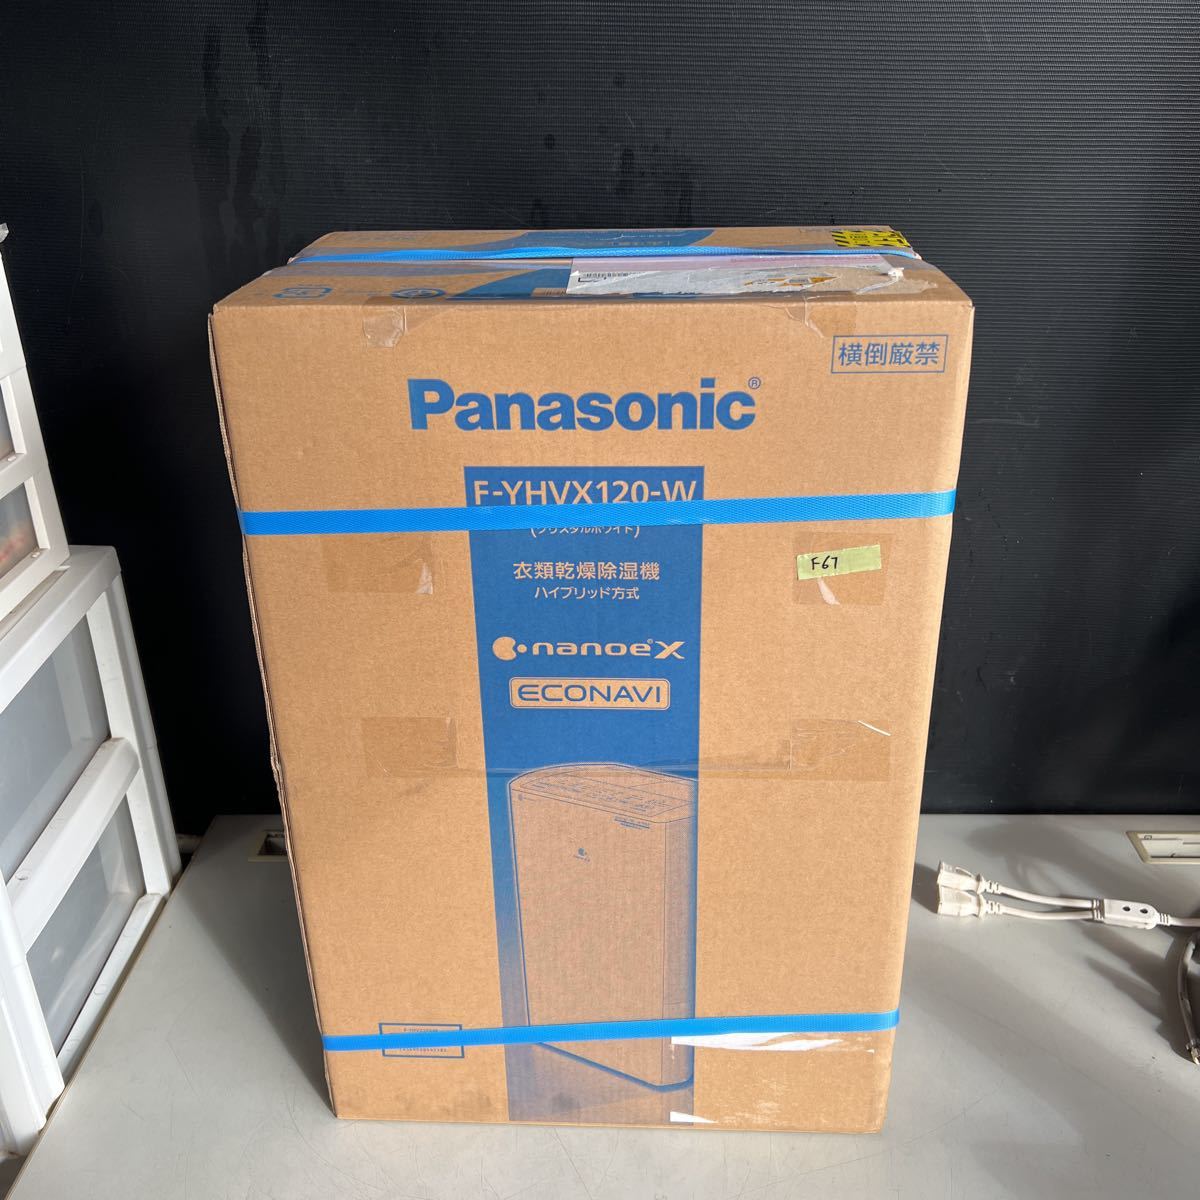 F67 140サイズ発送 新品未開封 Panasonic 衣類乾燥除湿機 F-YHVX120 -w